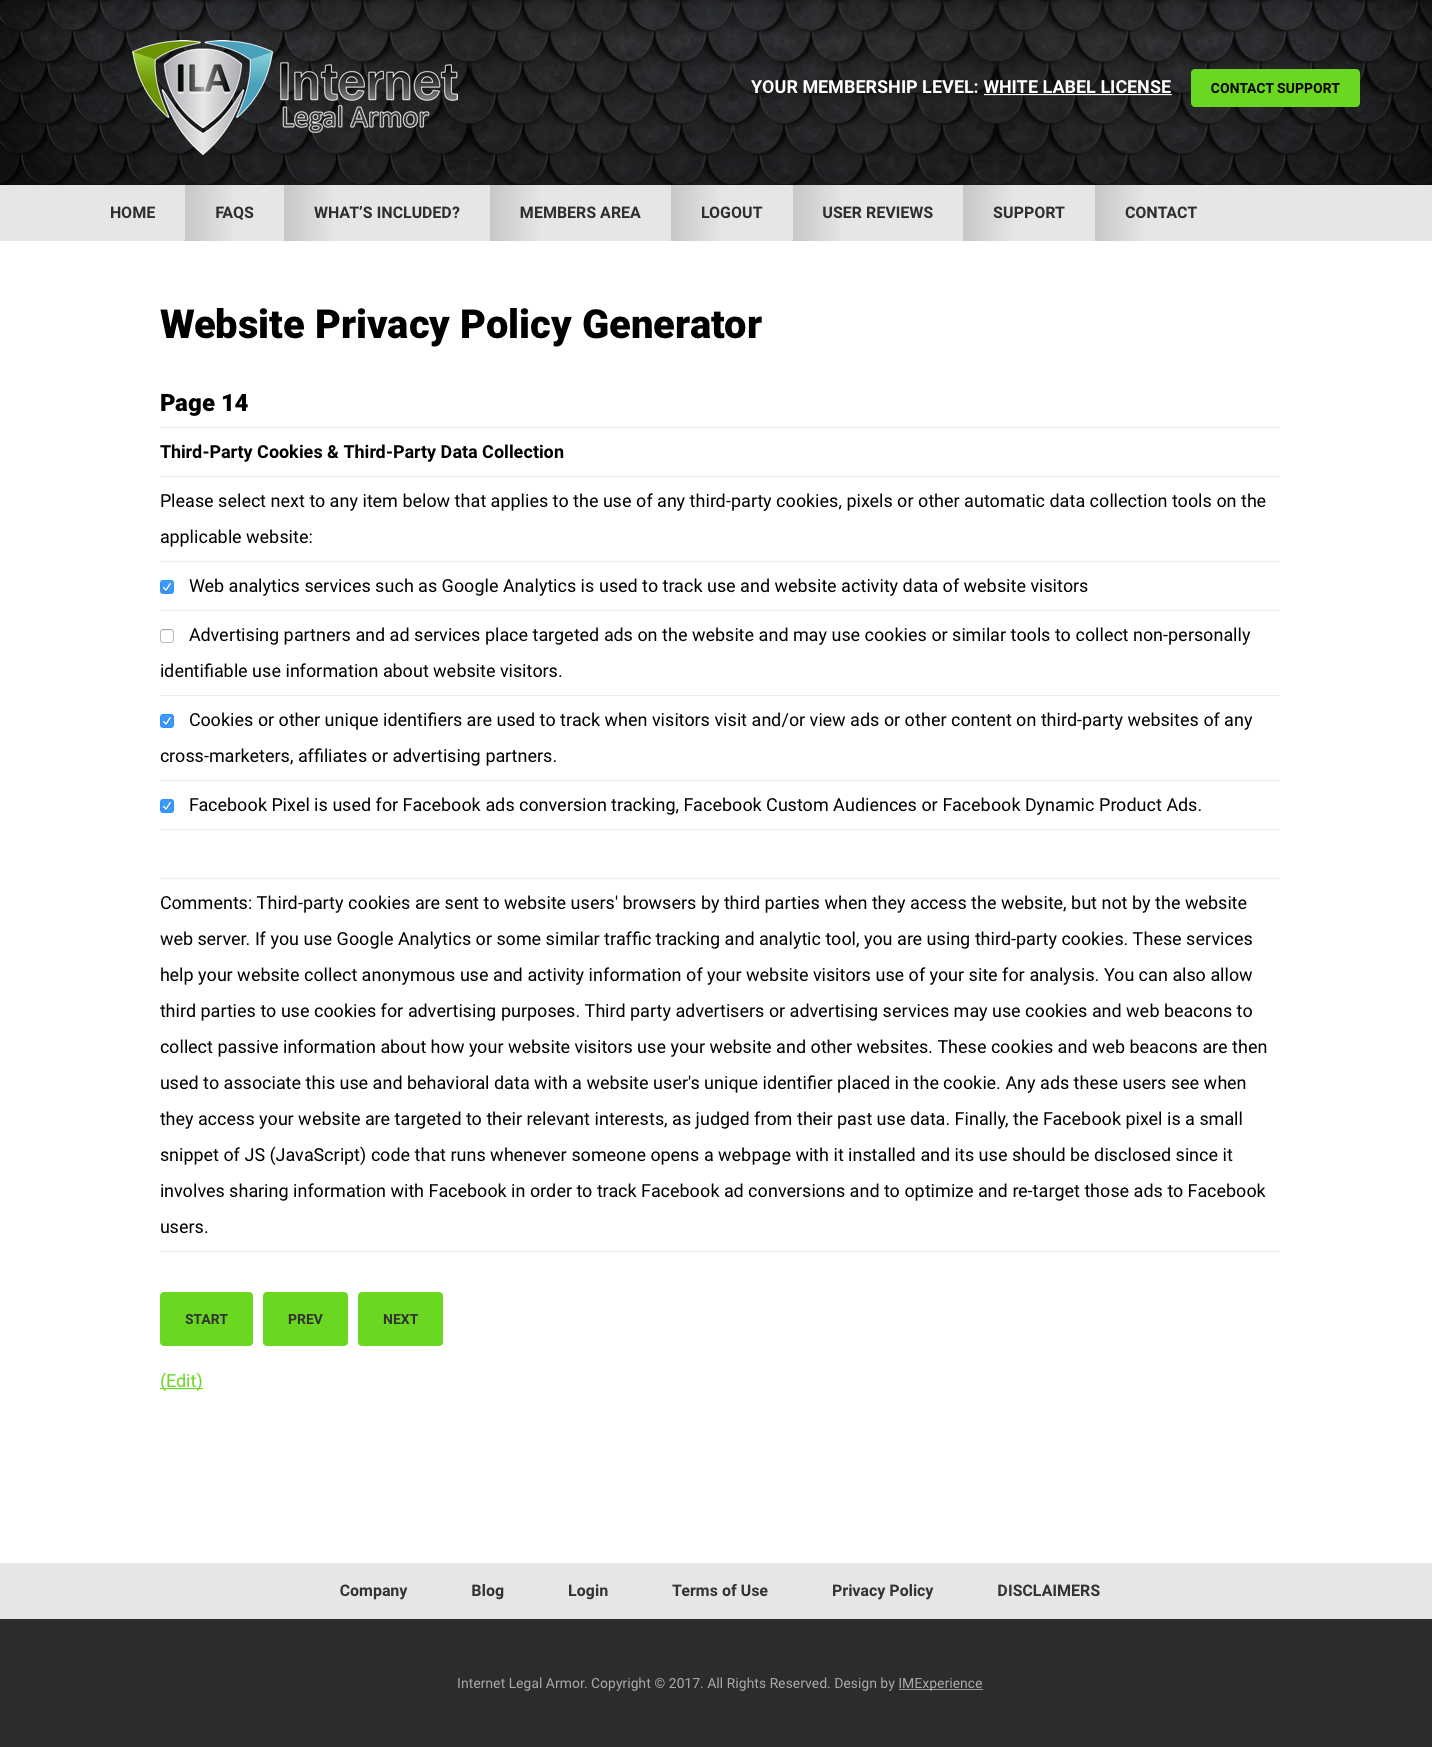 website-privacy-policy-generator-description